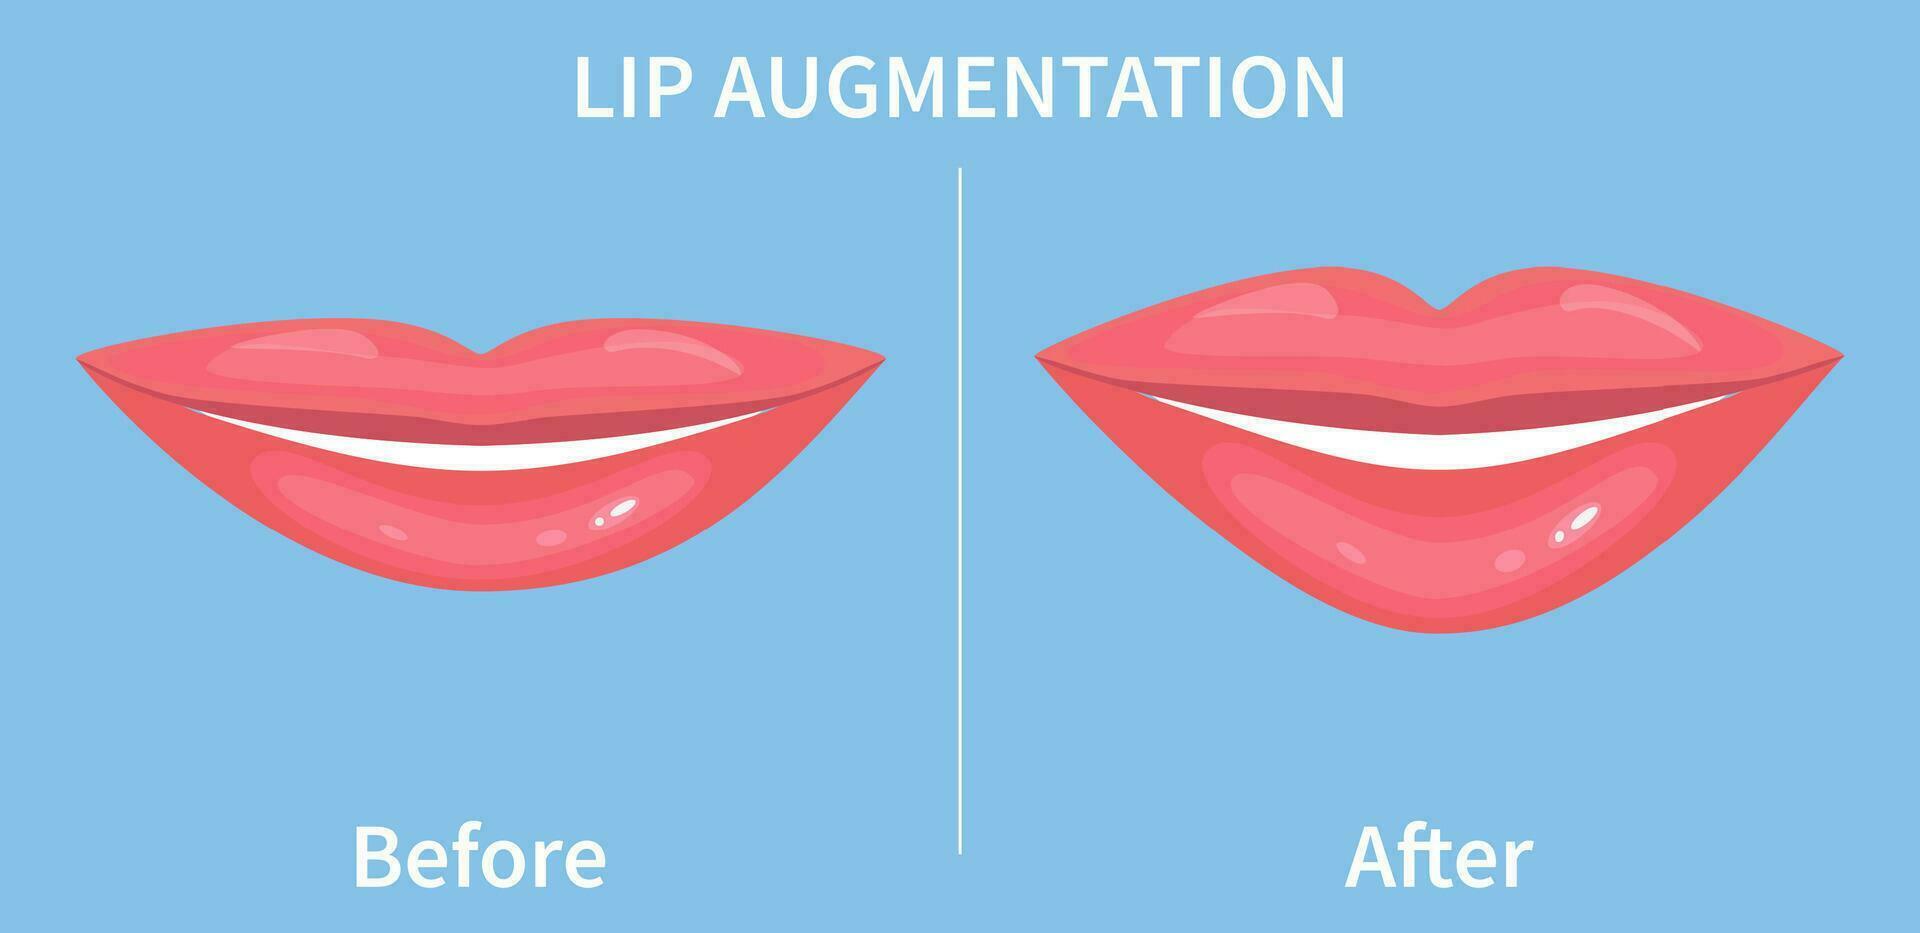 lip vergroting. voordat en na lip vulmiddel injecties. hyaluronzuur zuur injecties. vector illustratie in vlak stijl